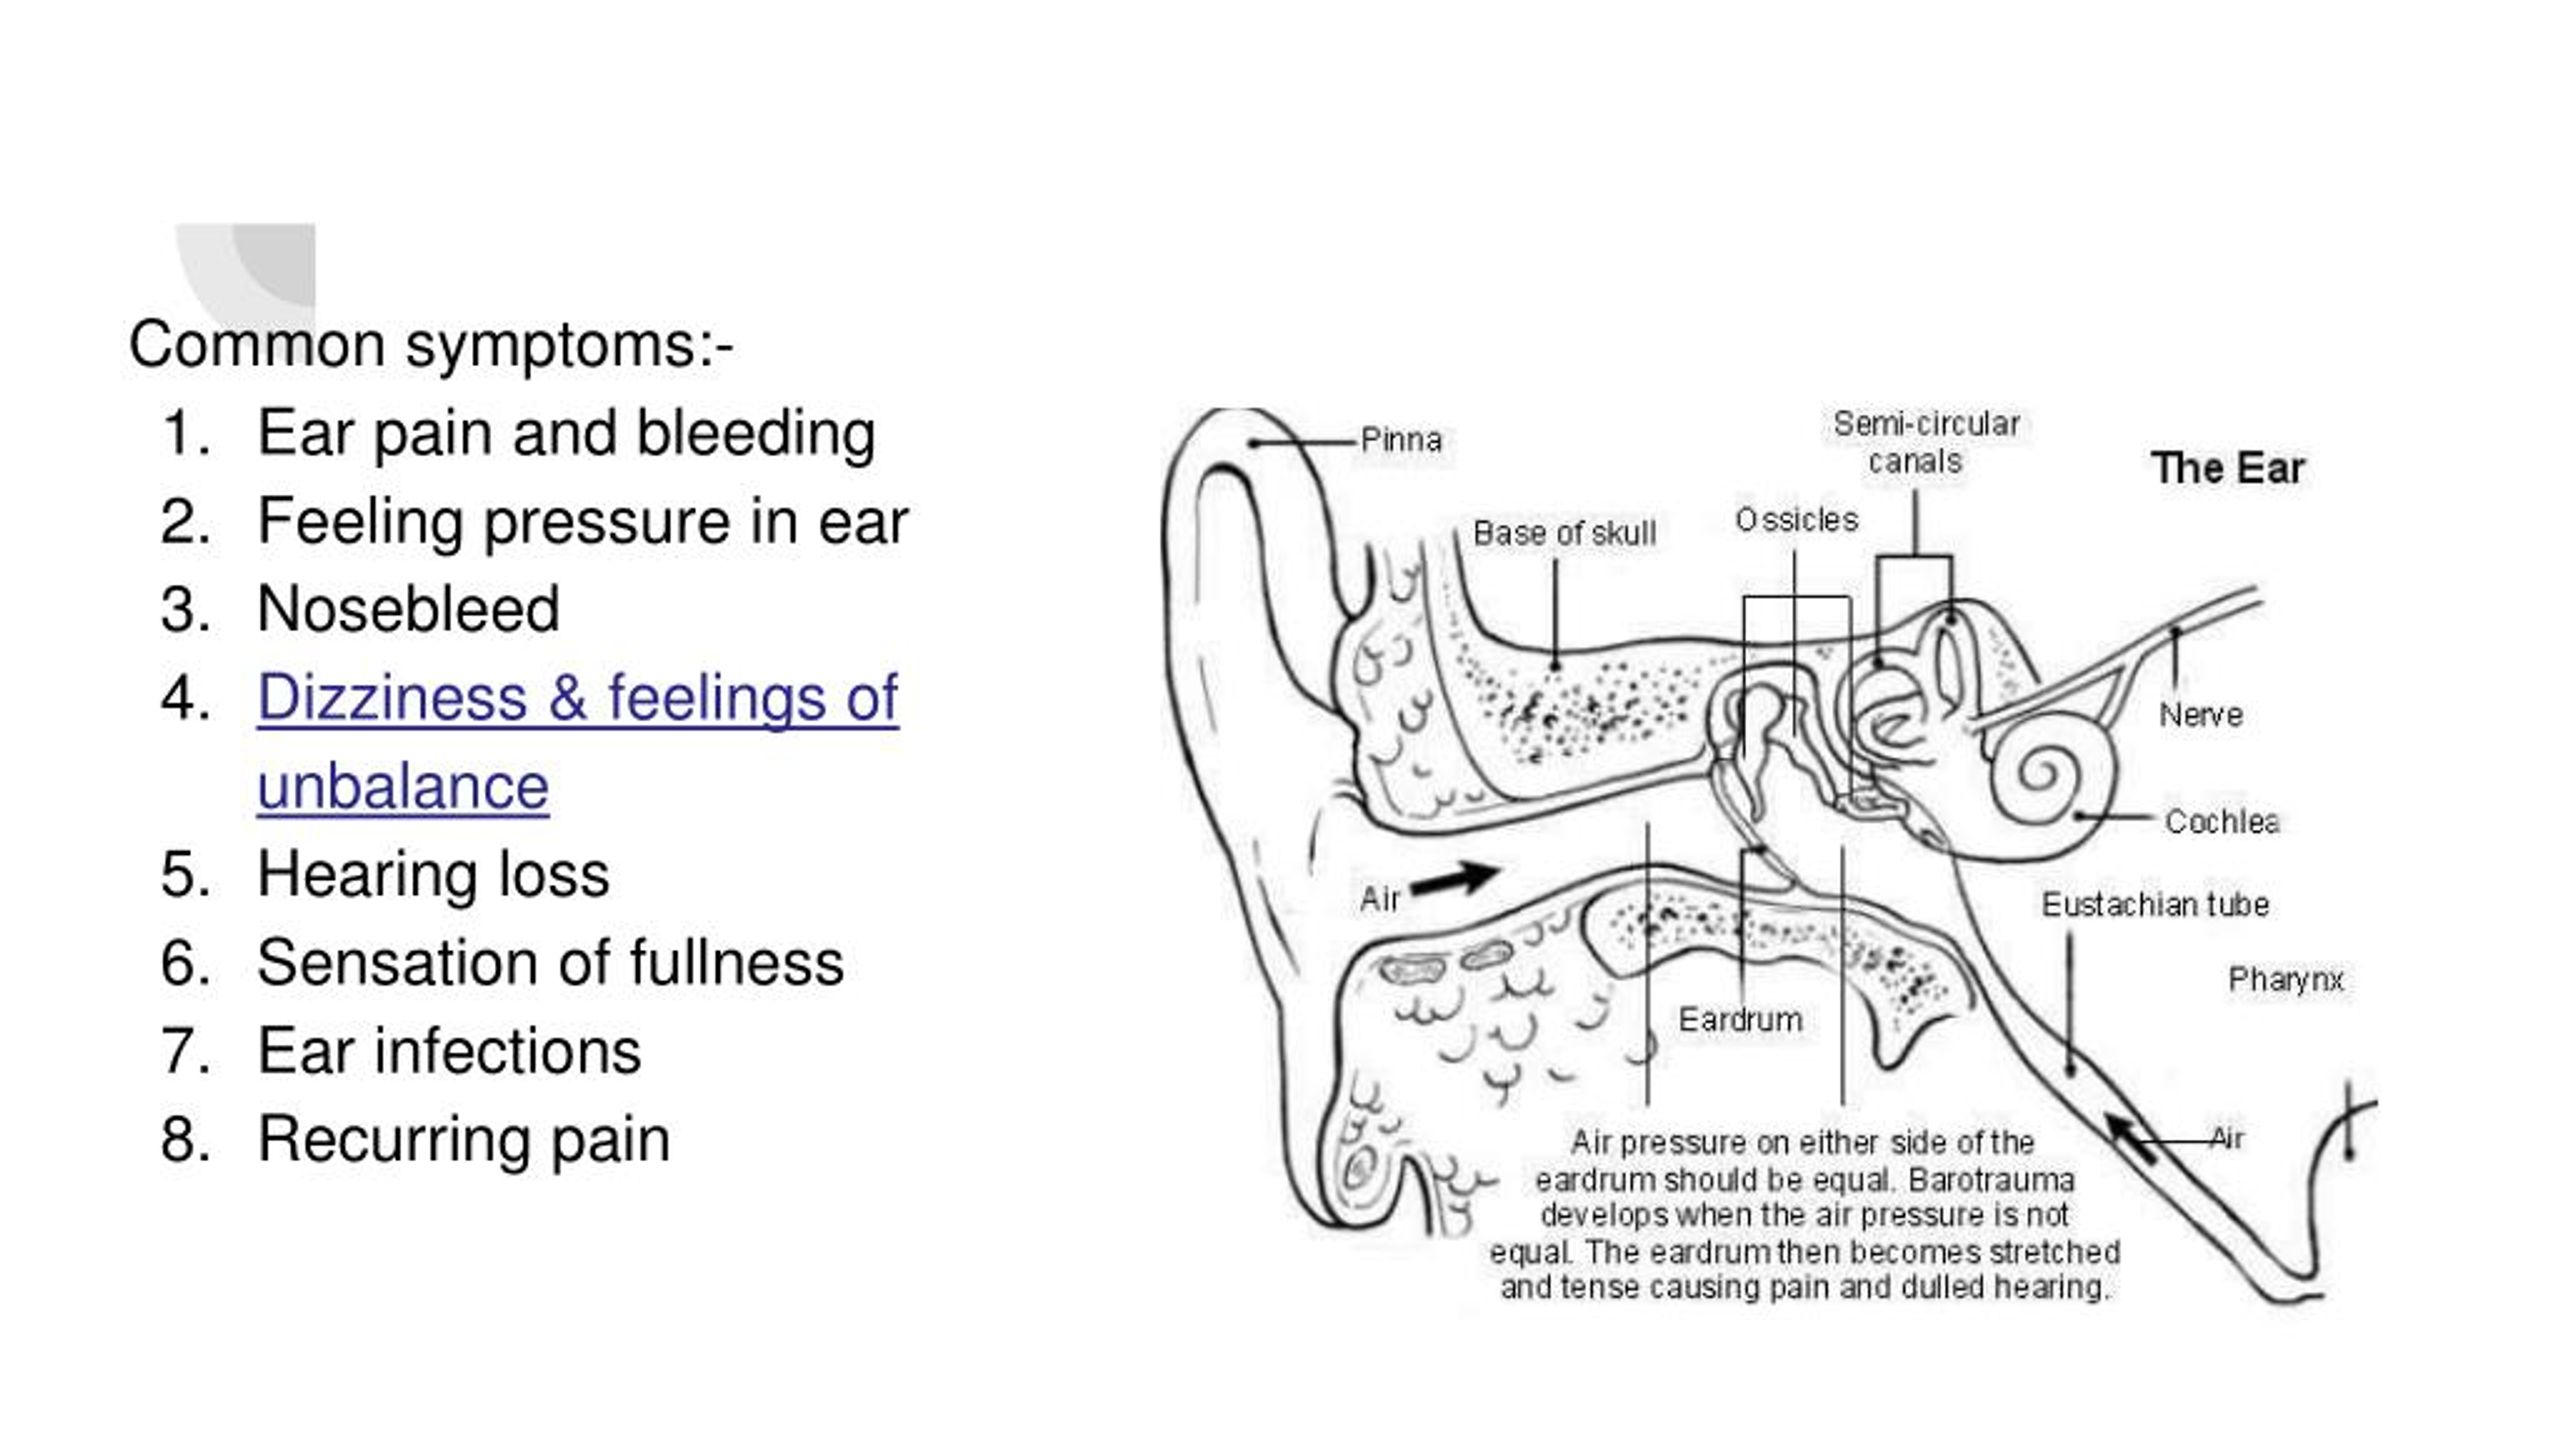 inner ear barotrauma recovery time